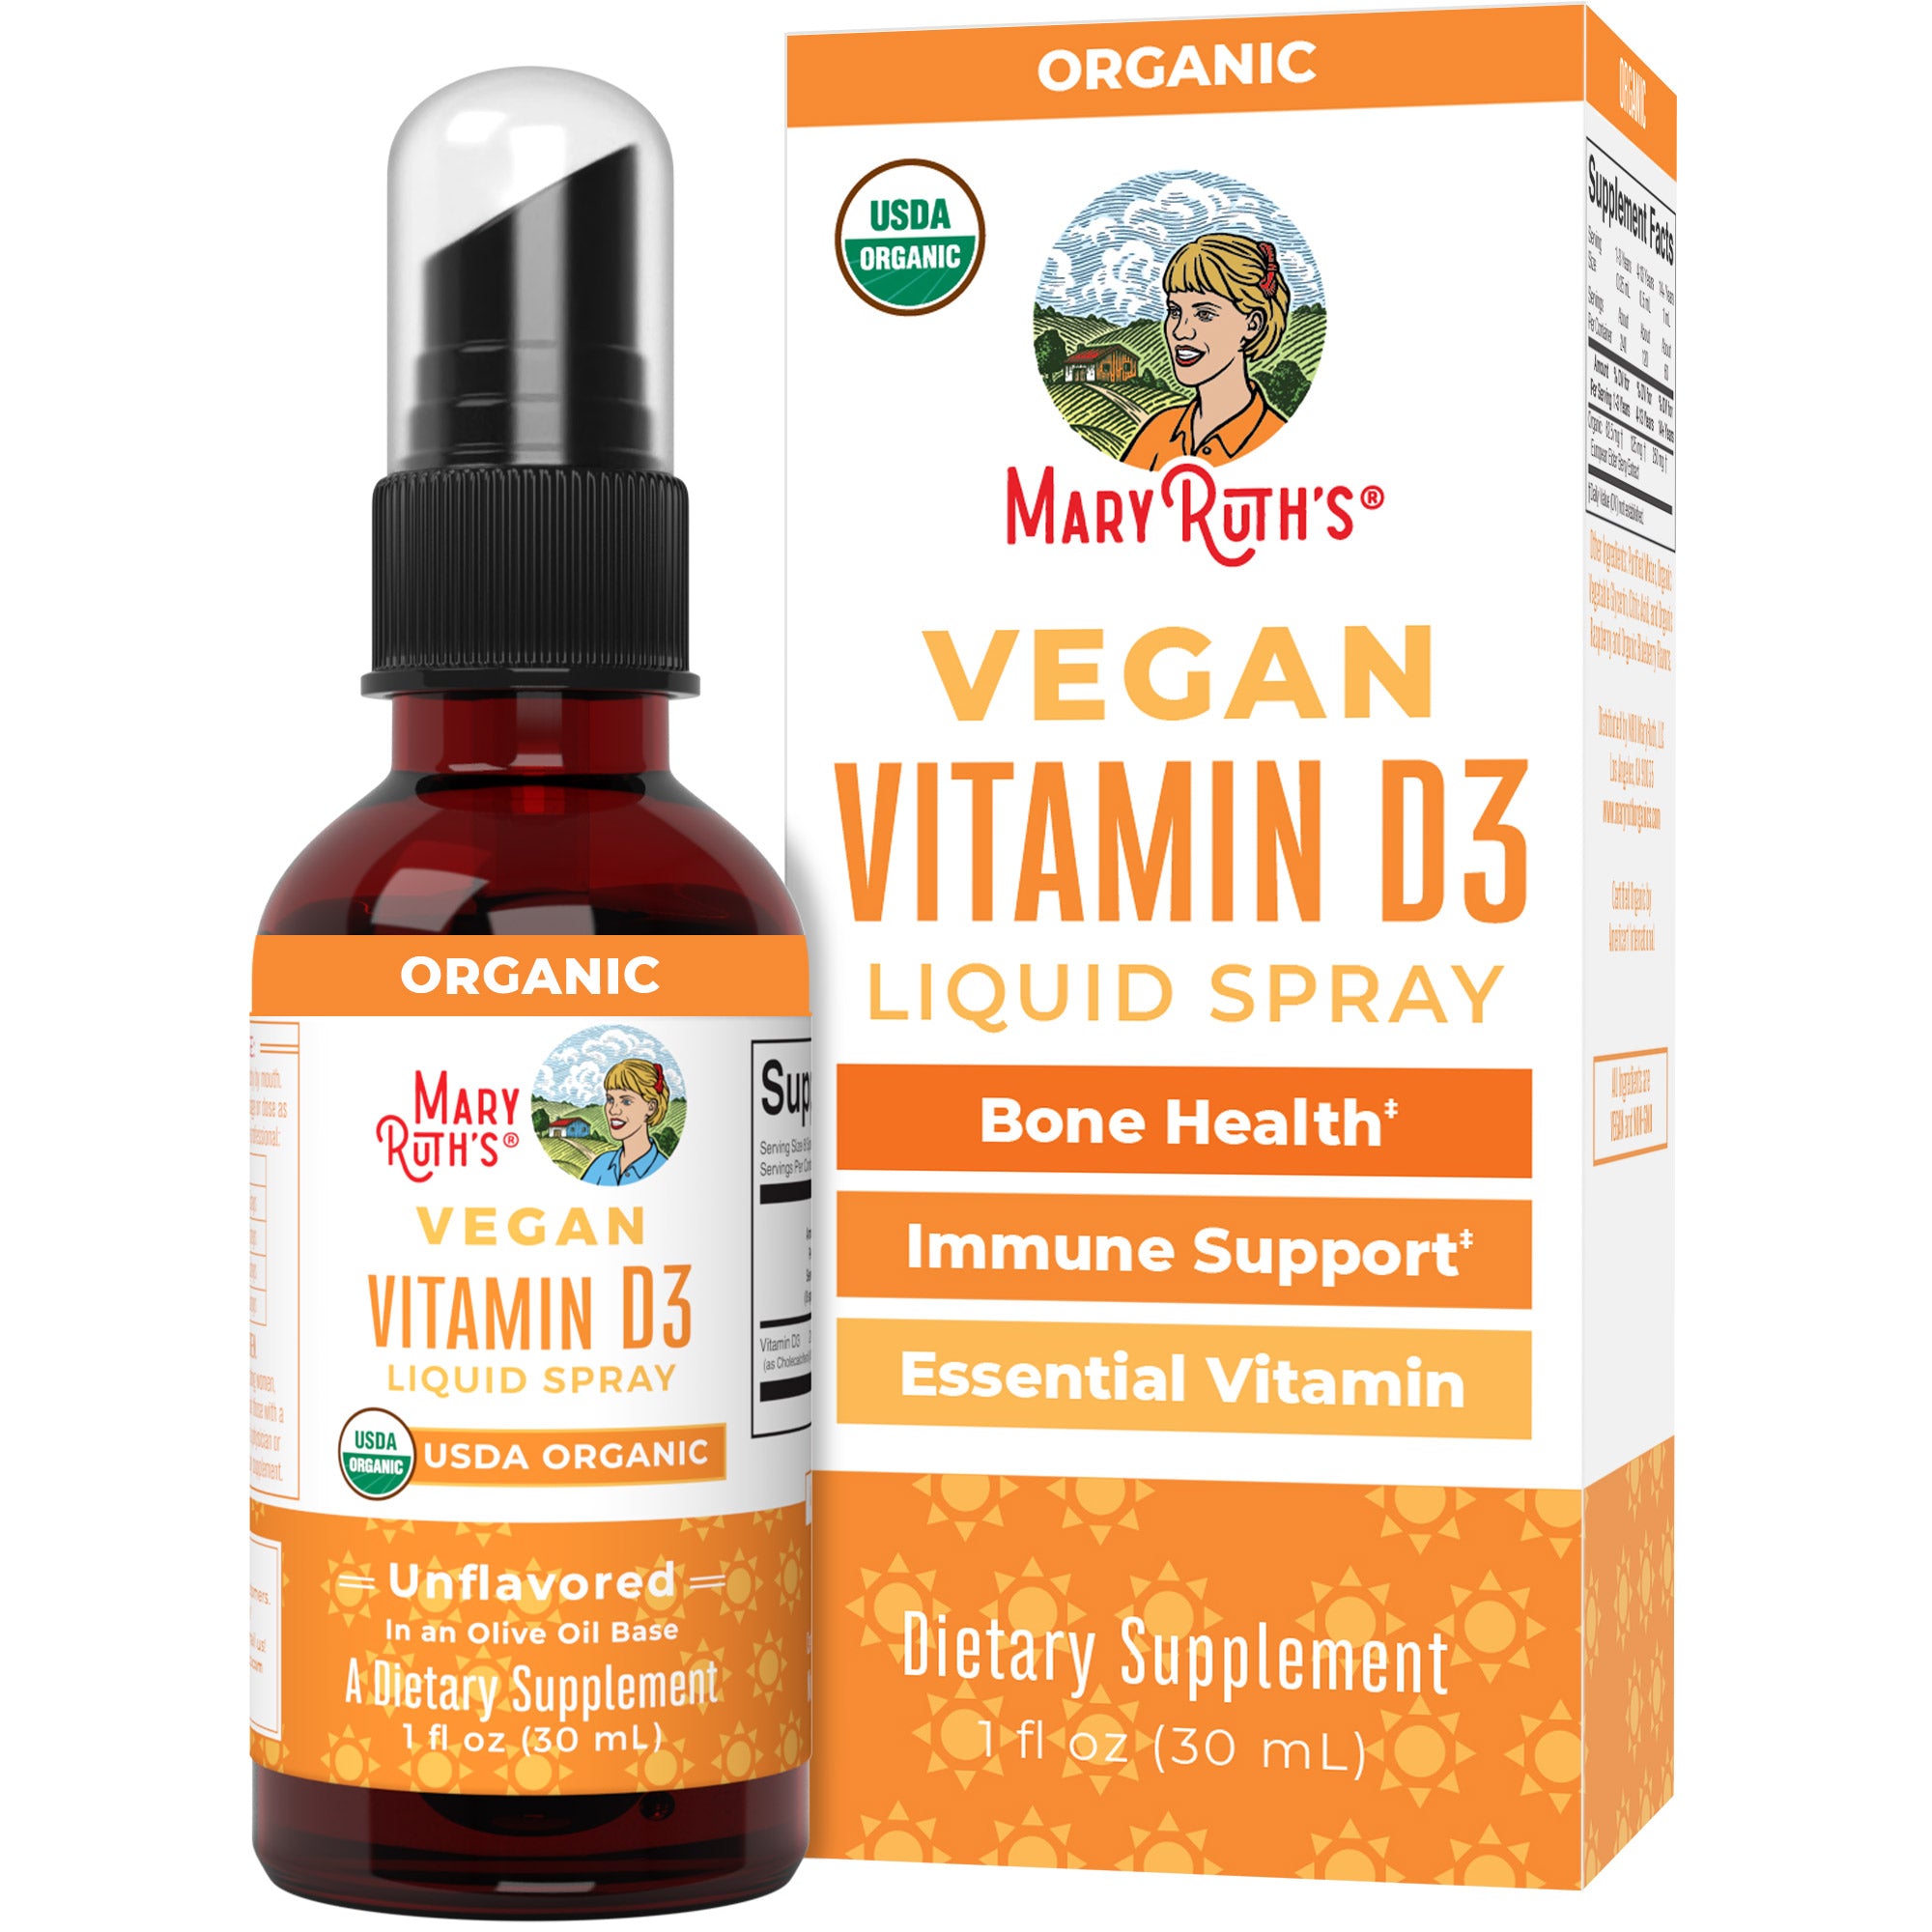 Vegan Vitamin D3 Liquid Spray